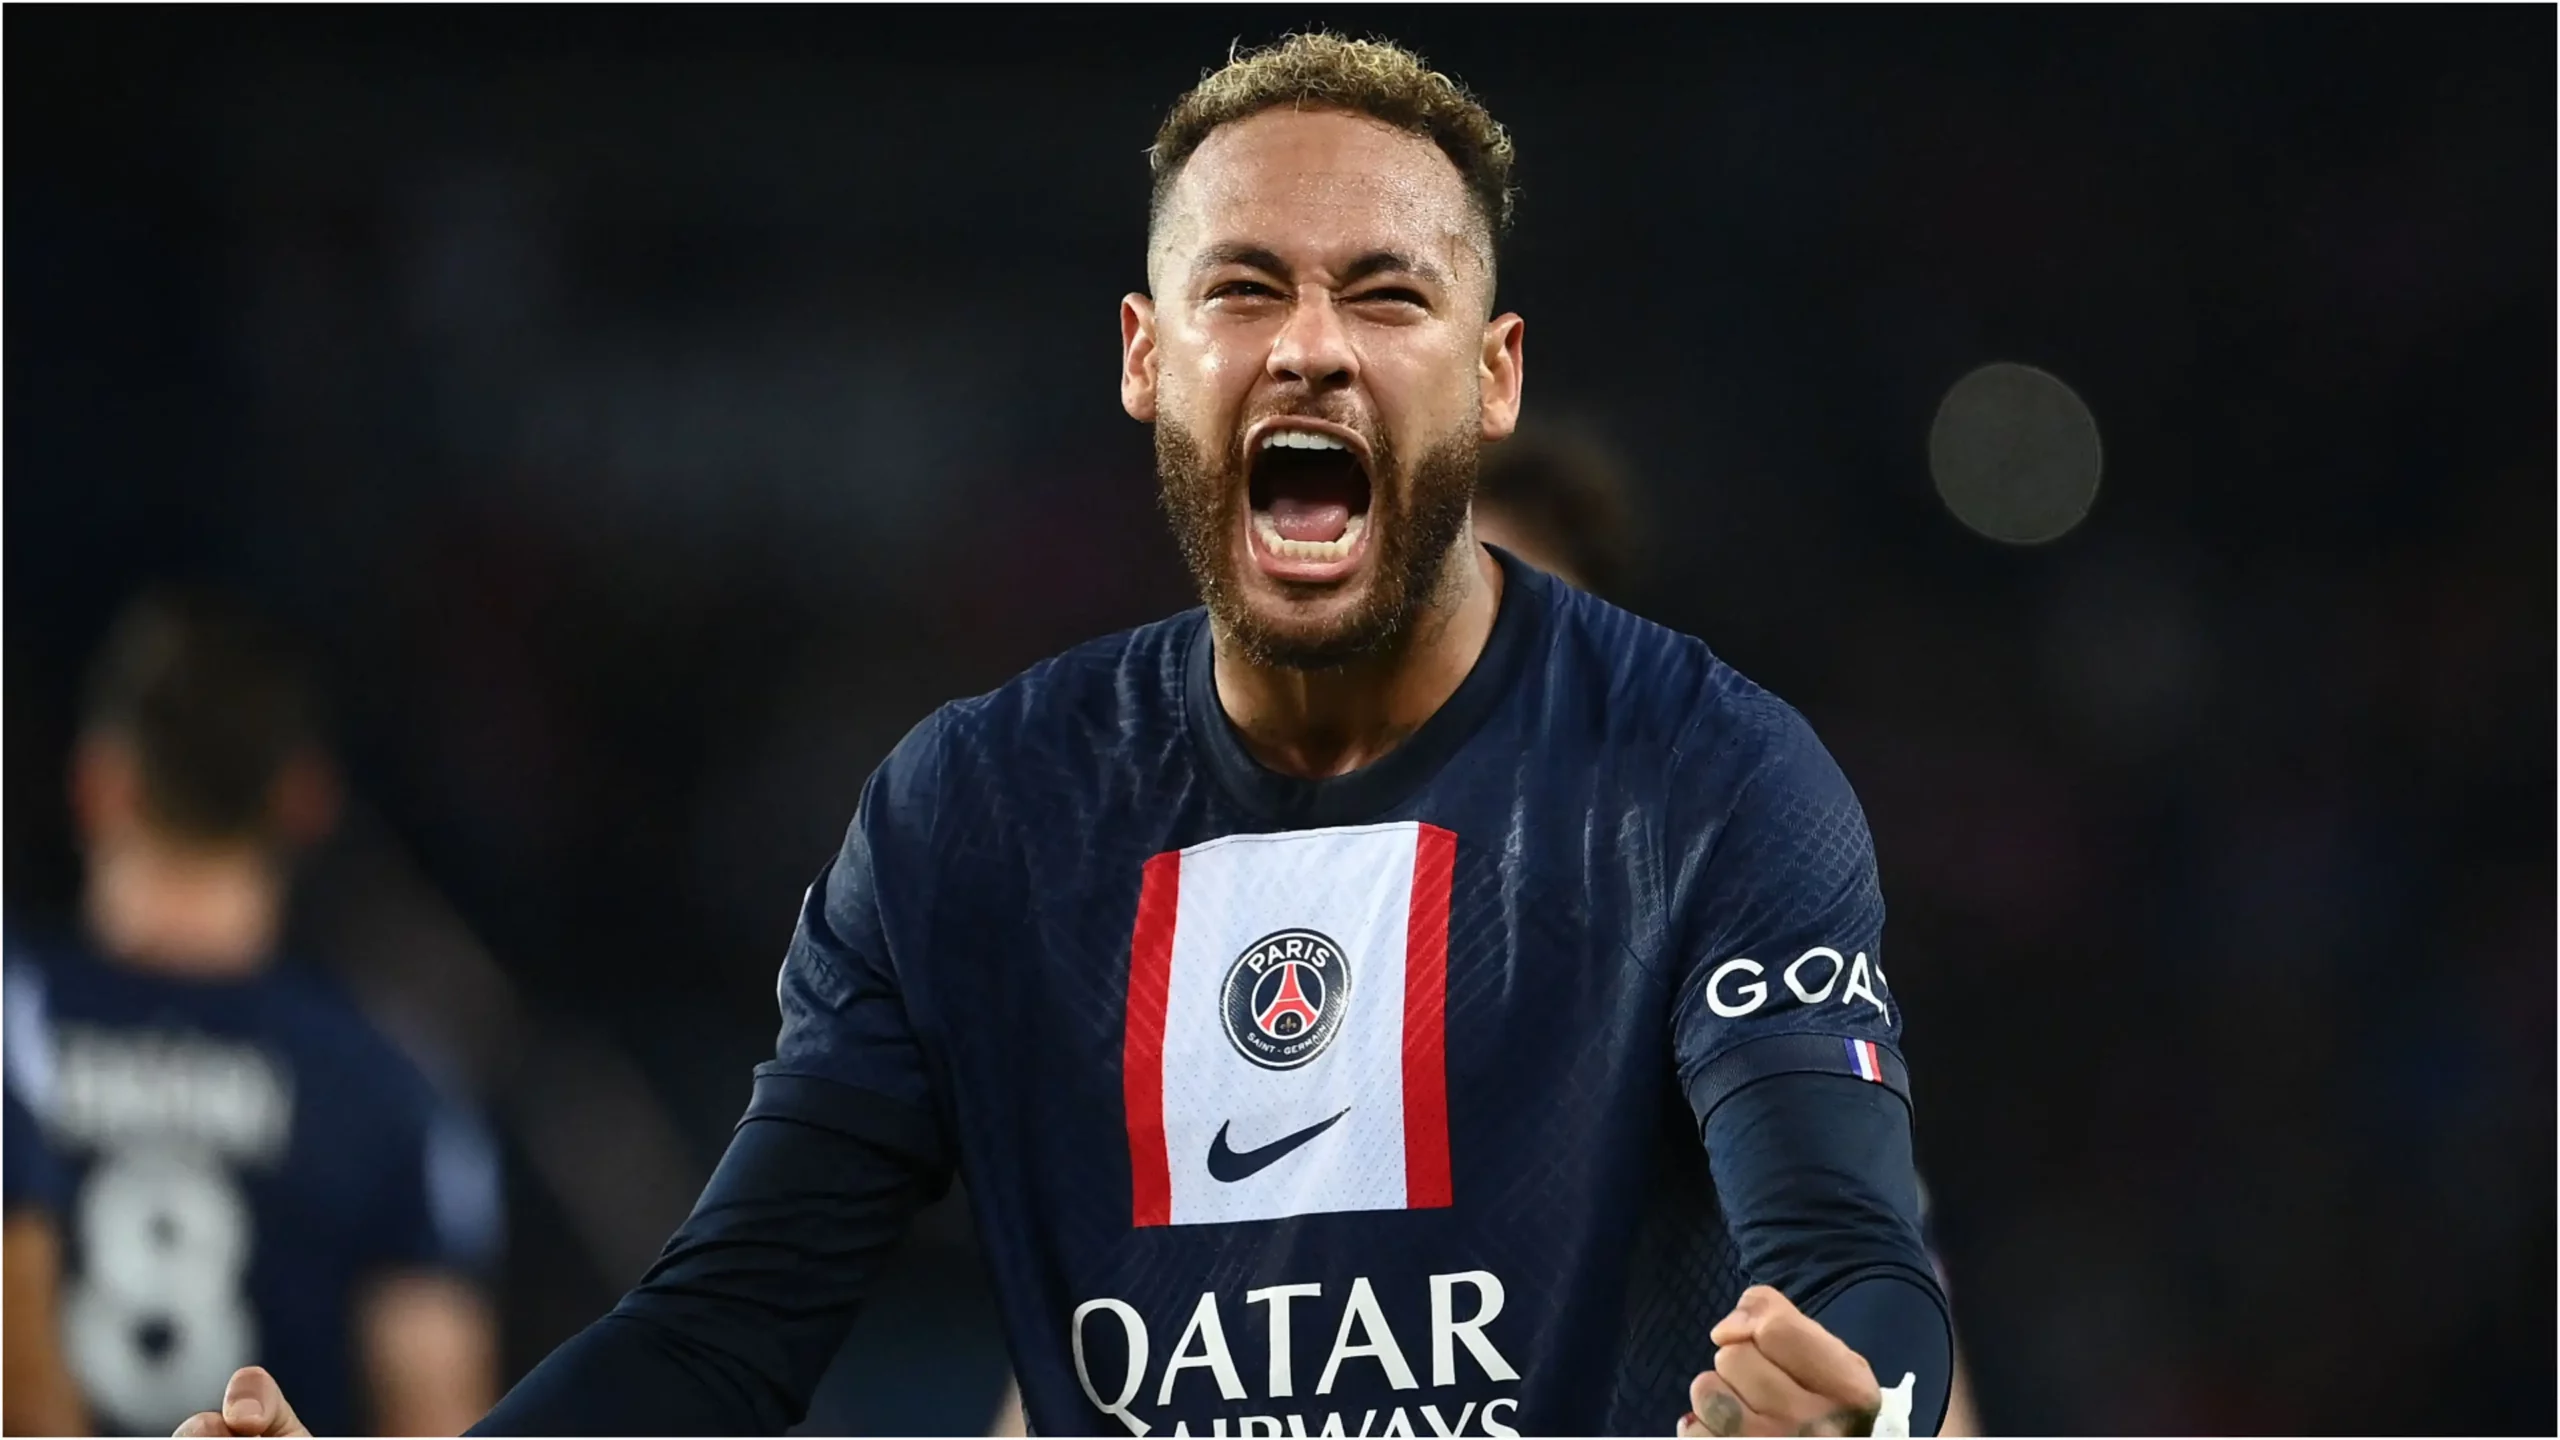 Transferimi i Neymar te PSG i dyshimtë, rritet intensiteti i hetimeve për shifrën e frikshme